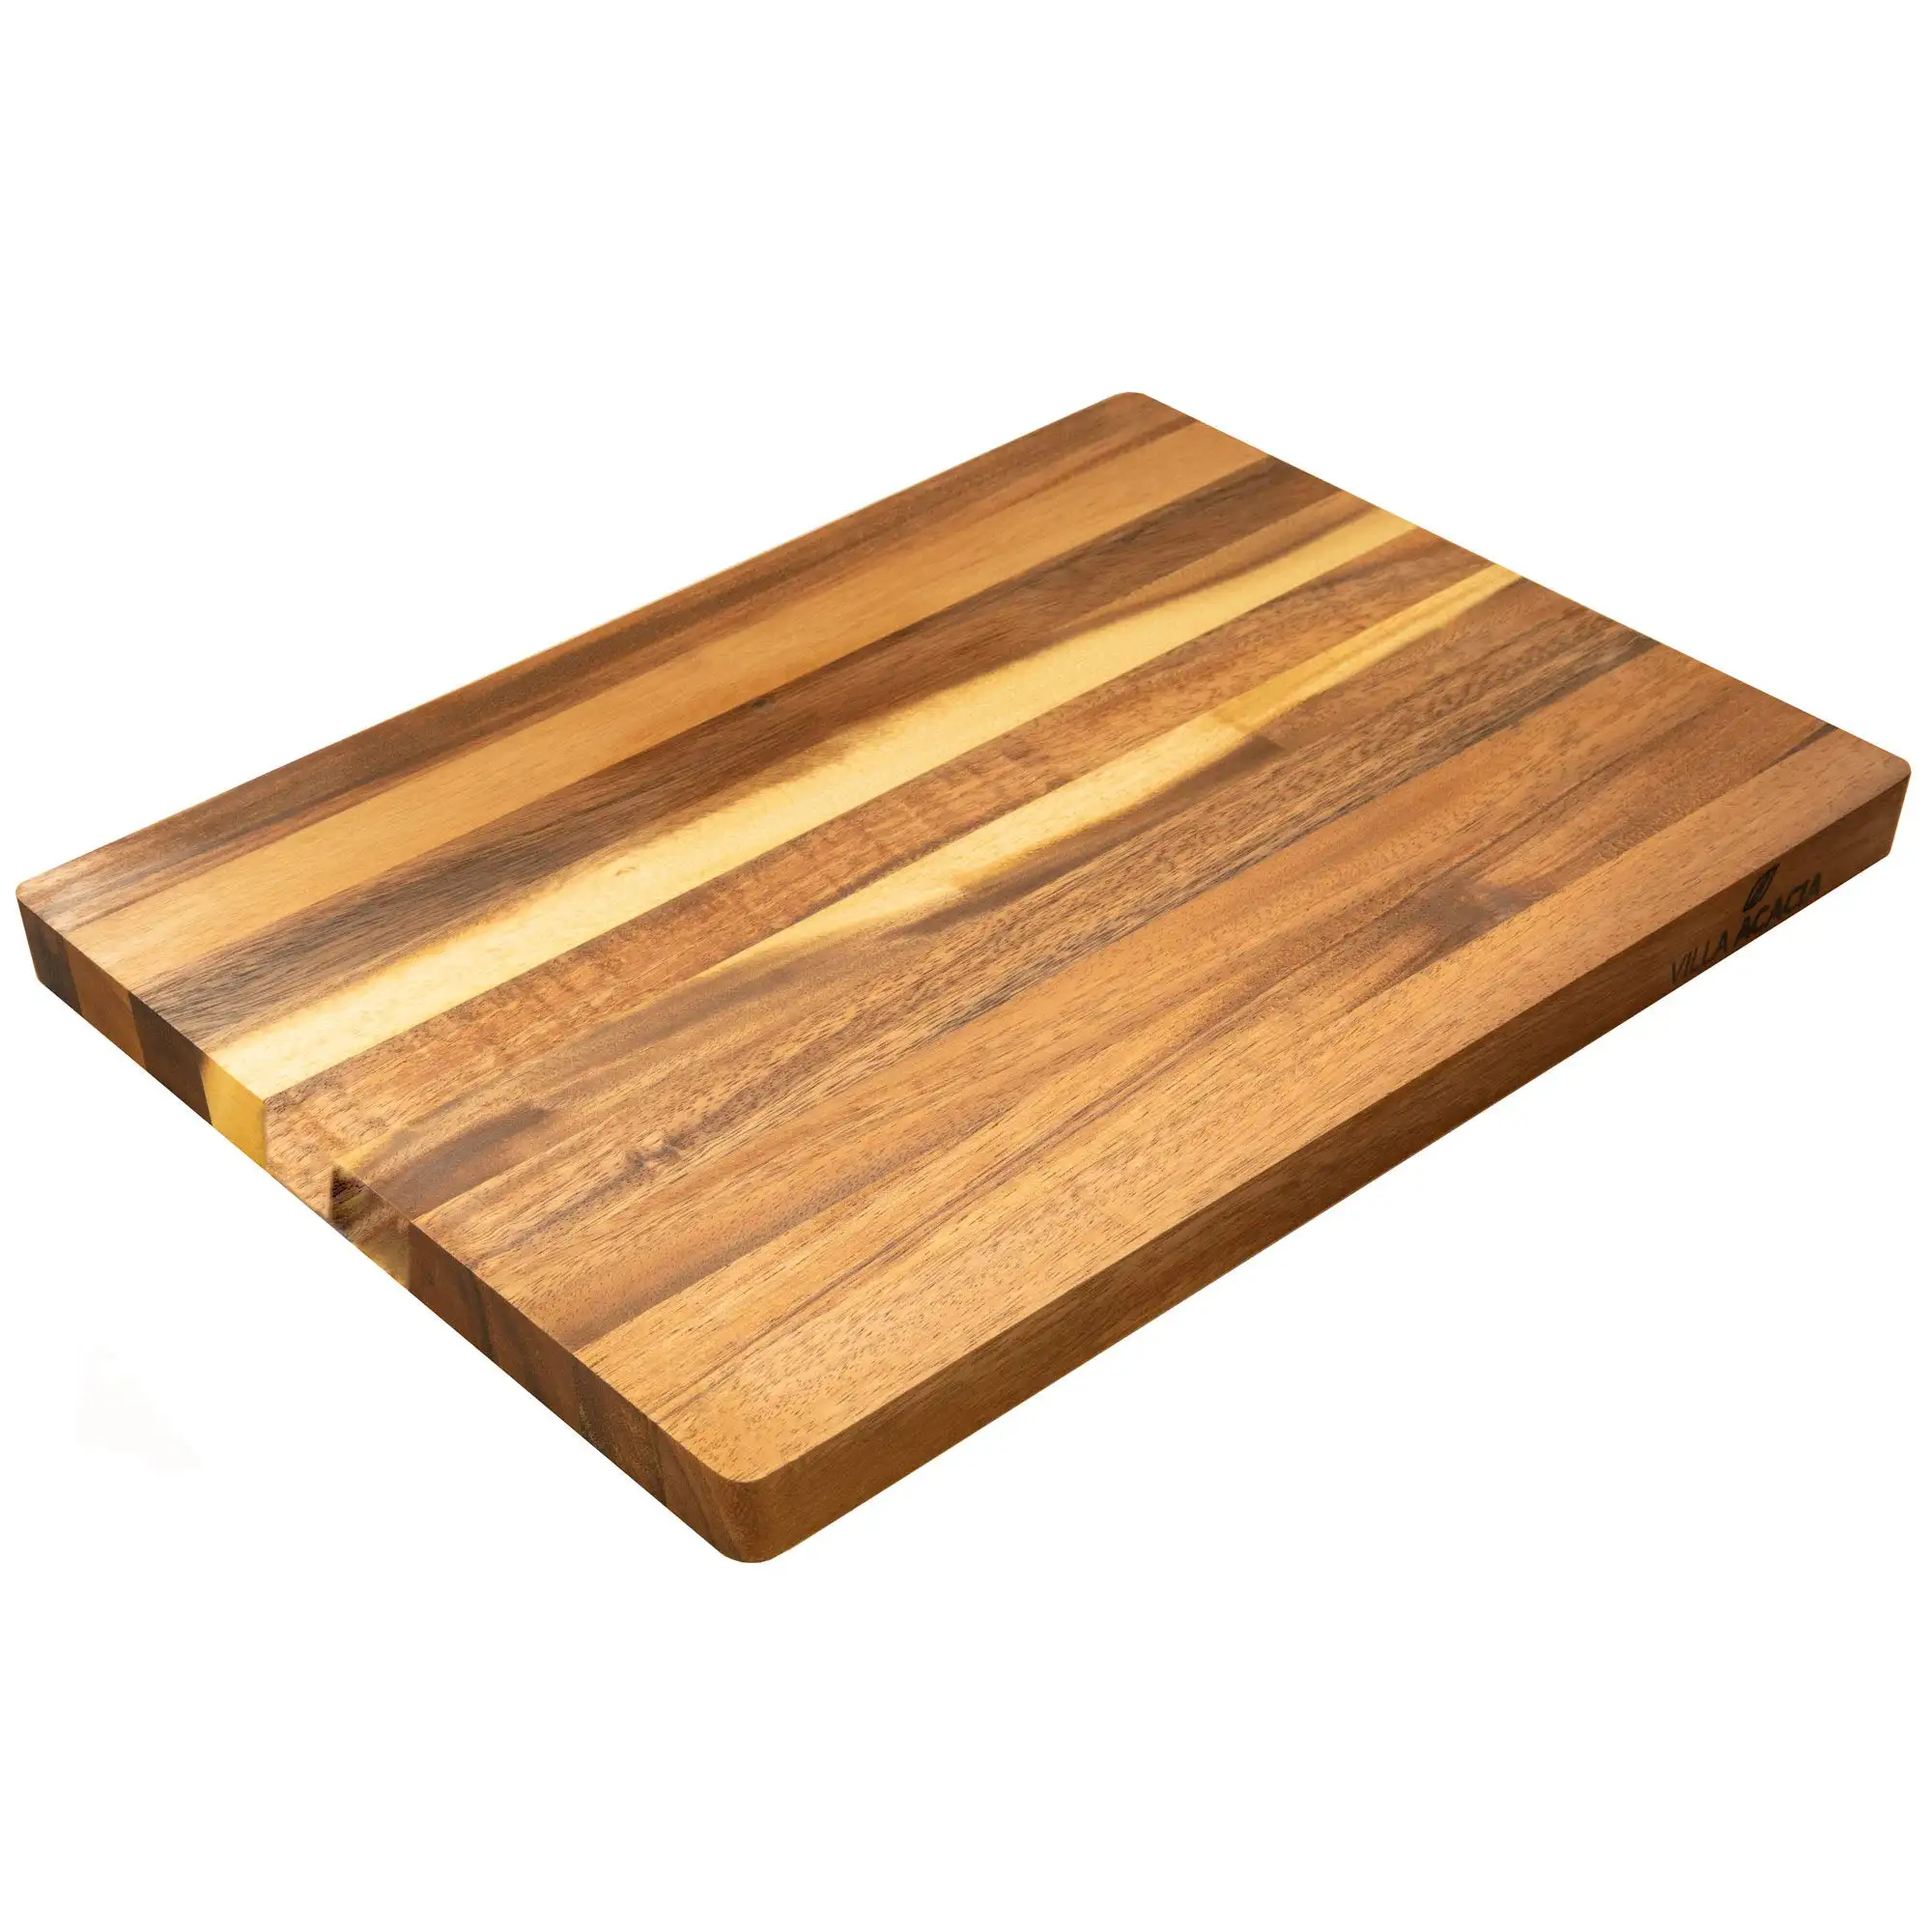 Planches à découper/planches rondes en bois naturel de haute qualité, pour la cuisine, whatsapp + 84 845 639 639, 2 pièces